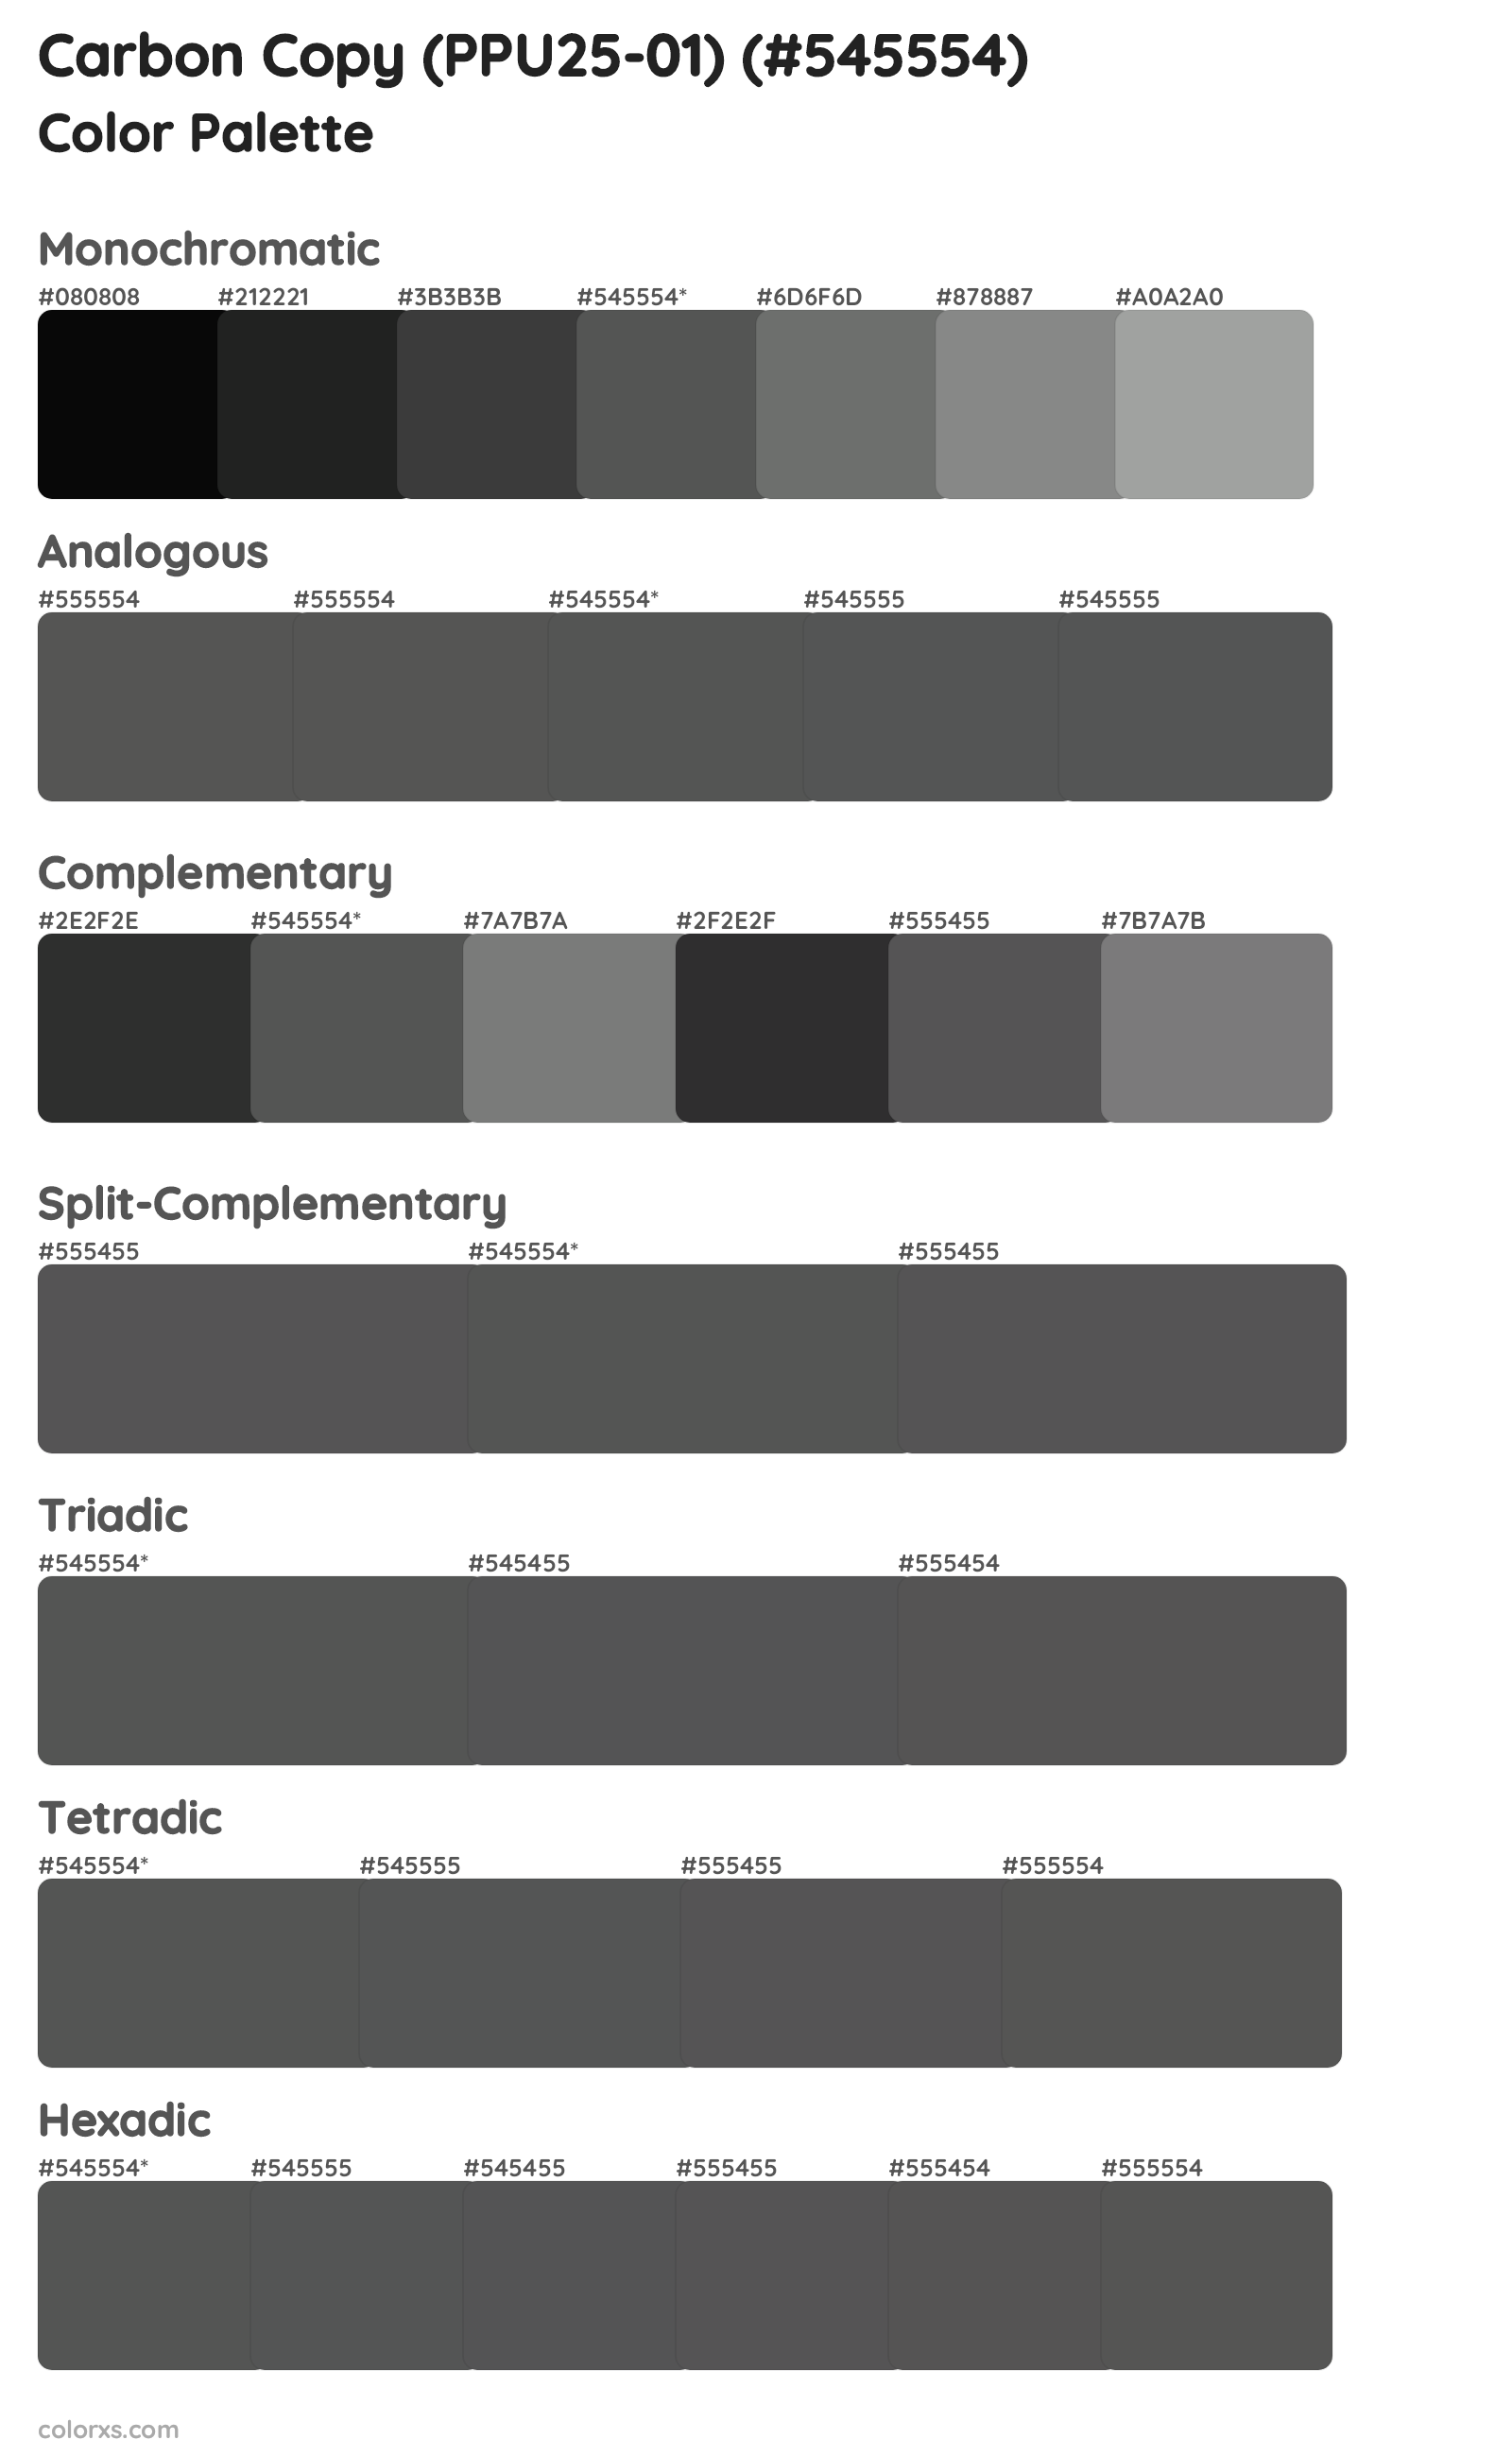 Carbon Copy (PPU25-01) Color Scheme Palettes